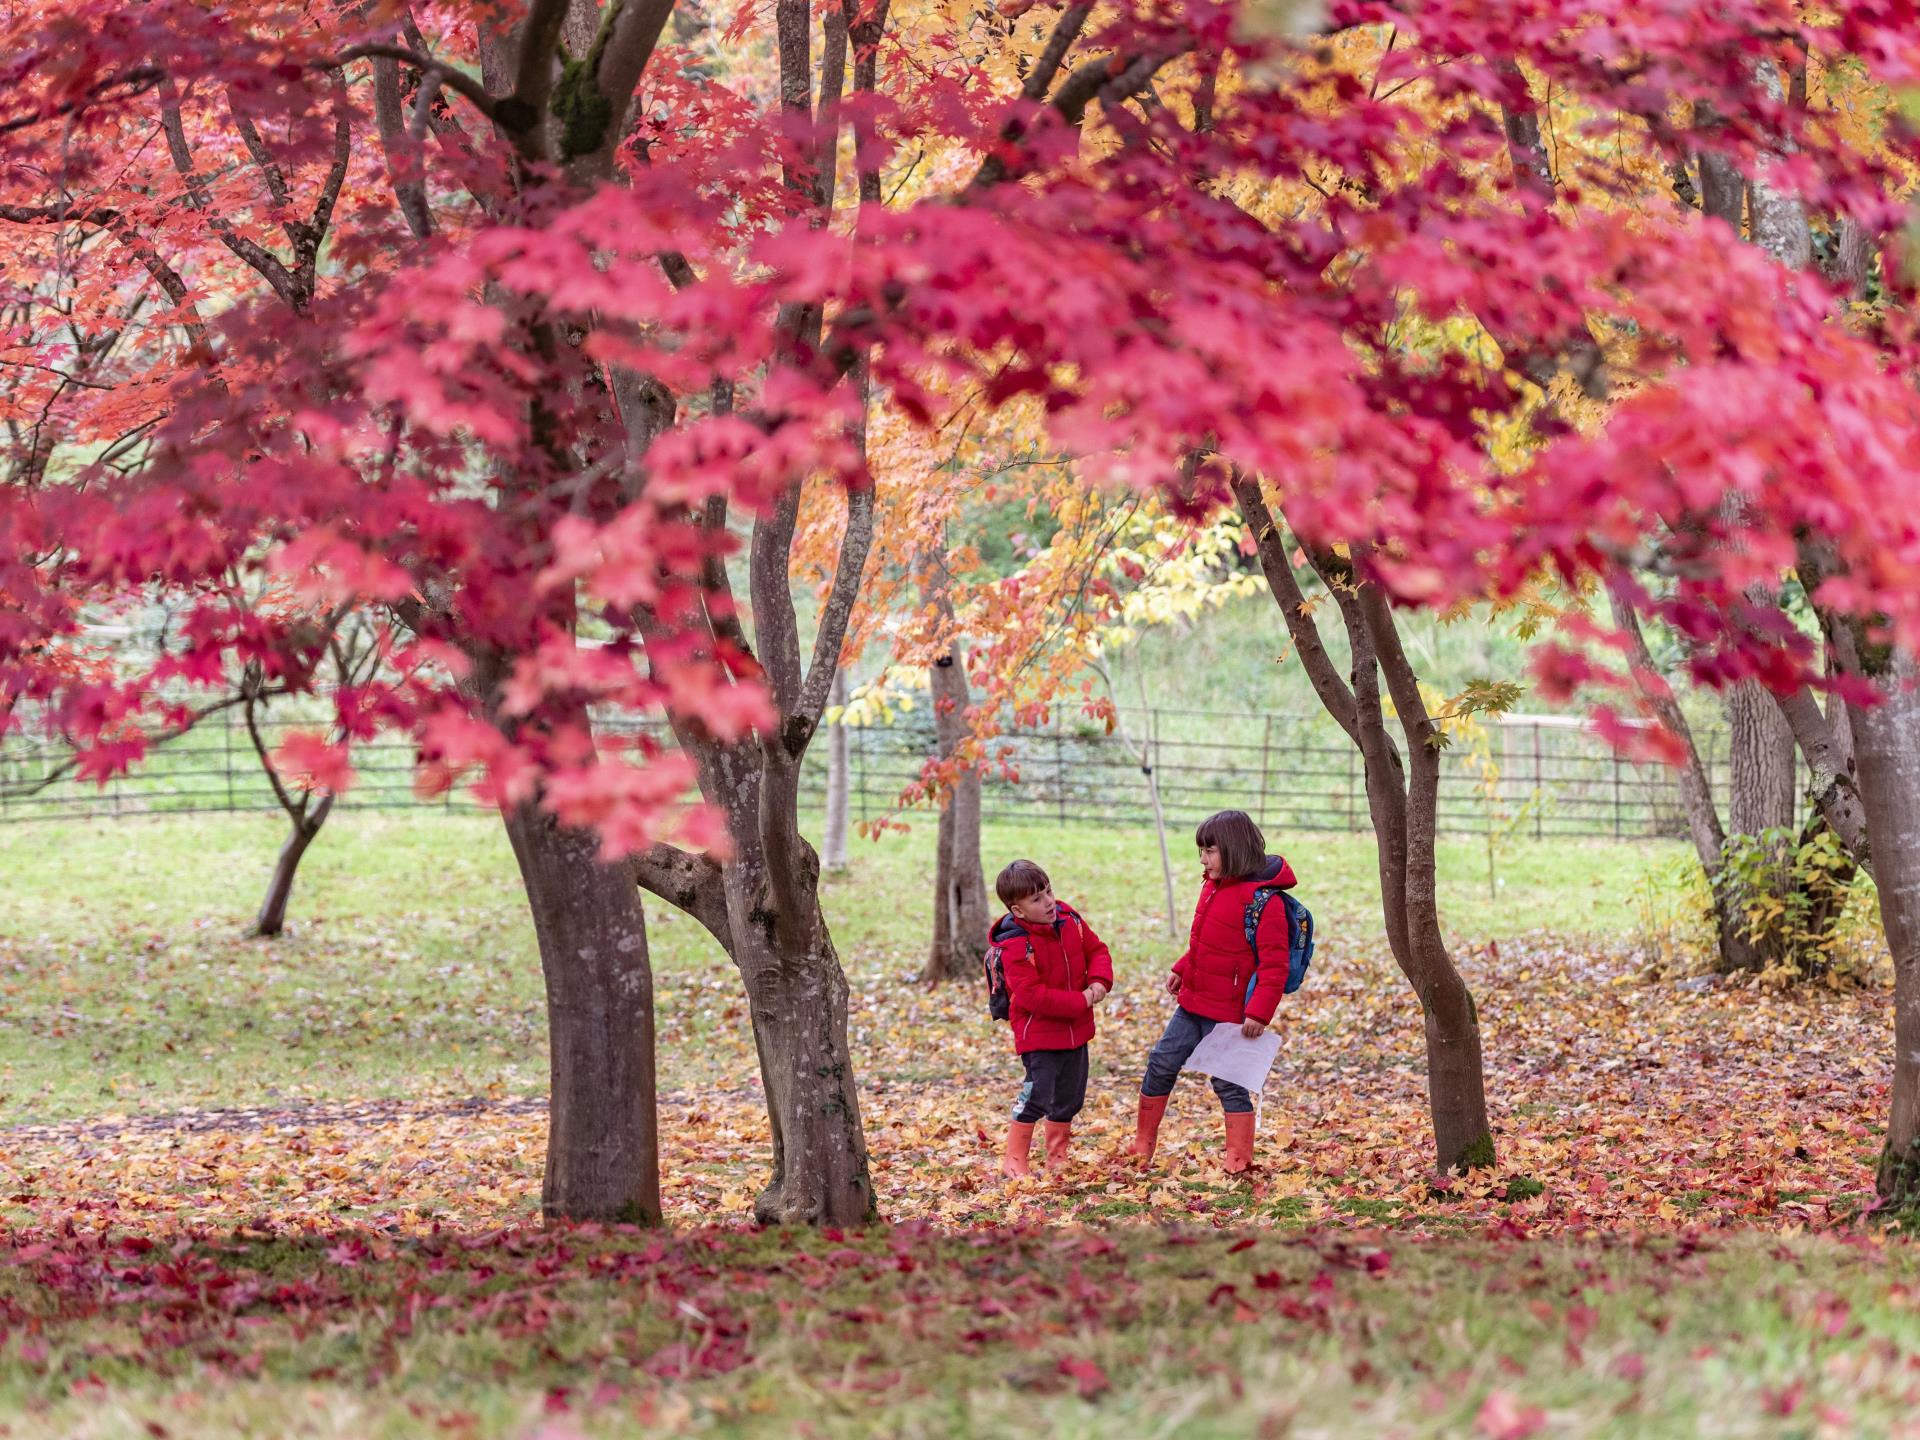 Autumn colour at Bodnant Garden